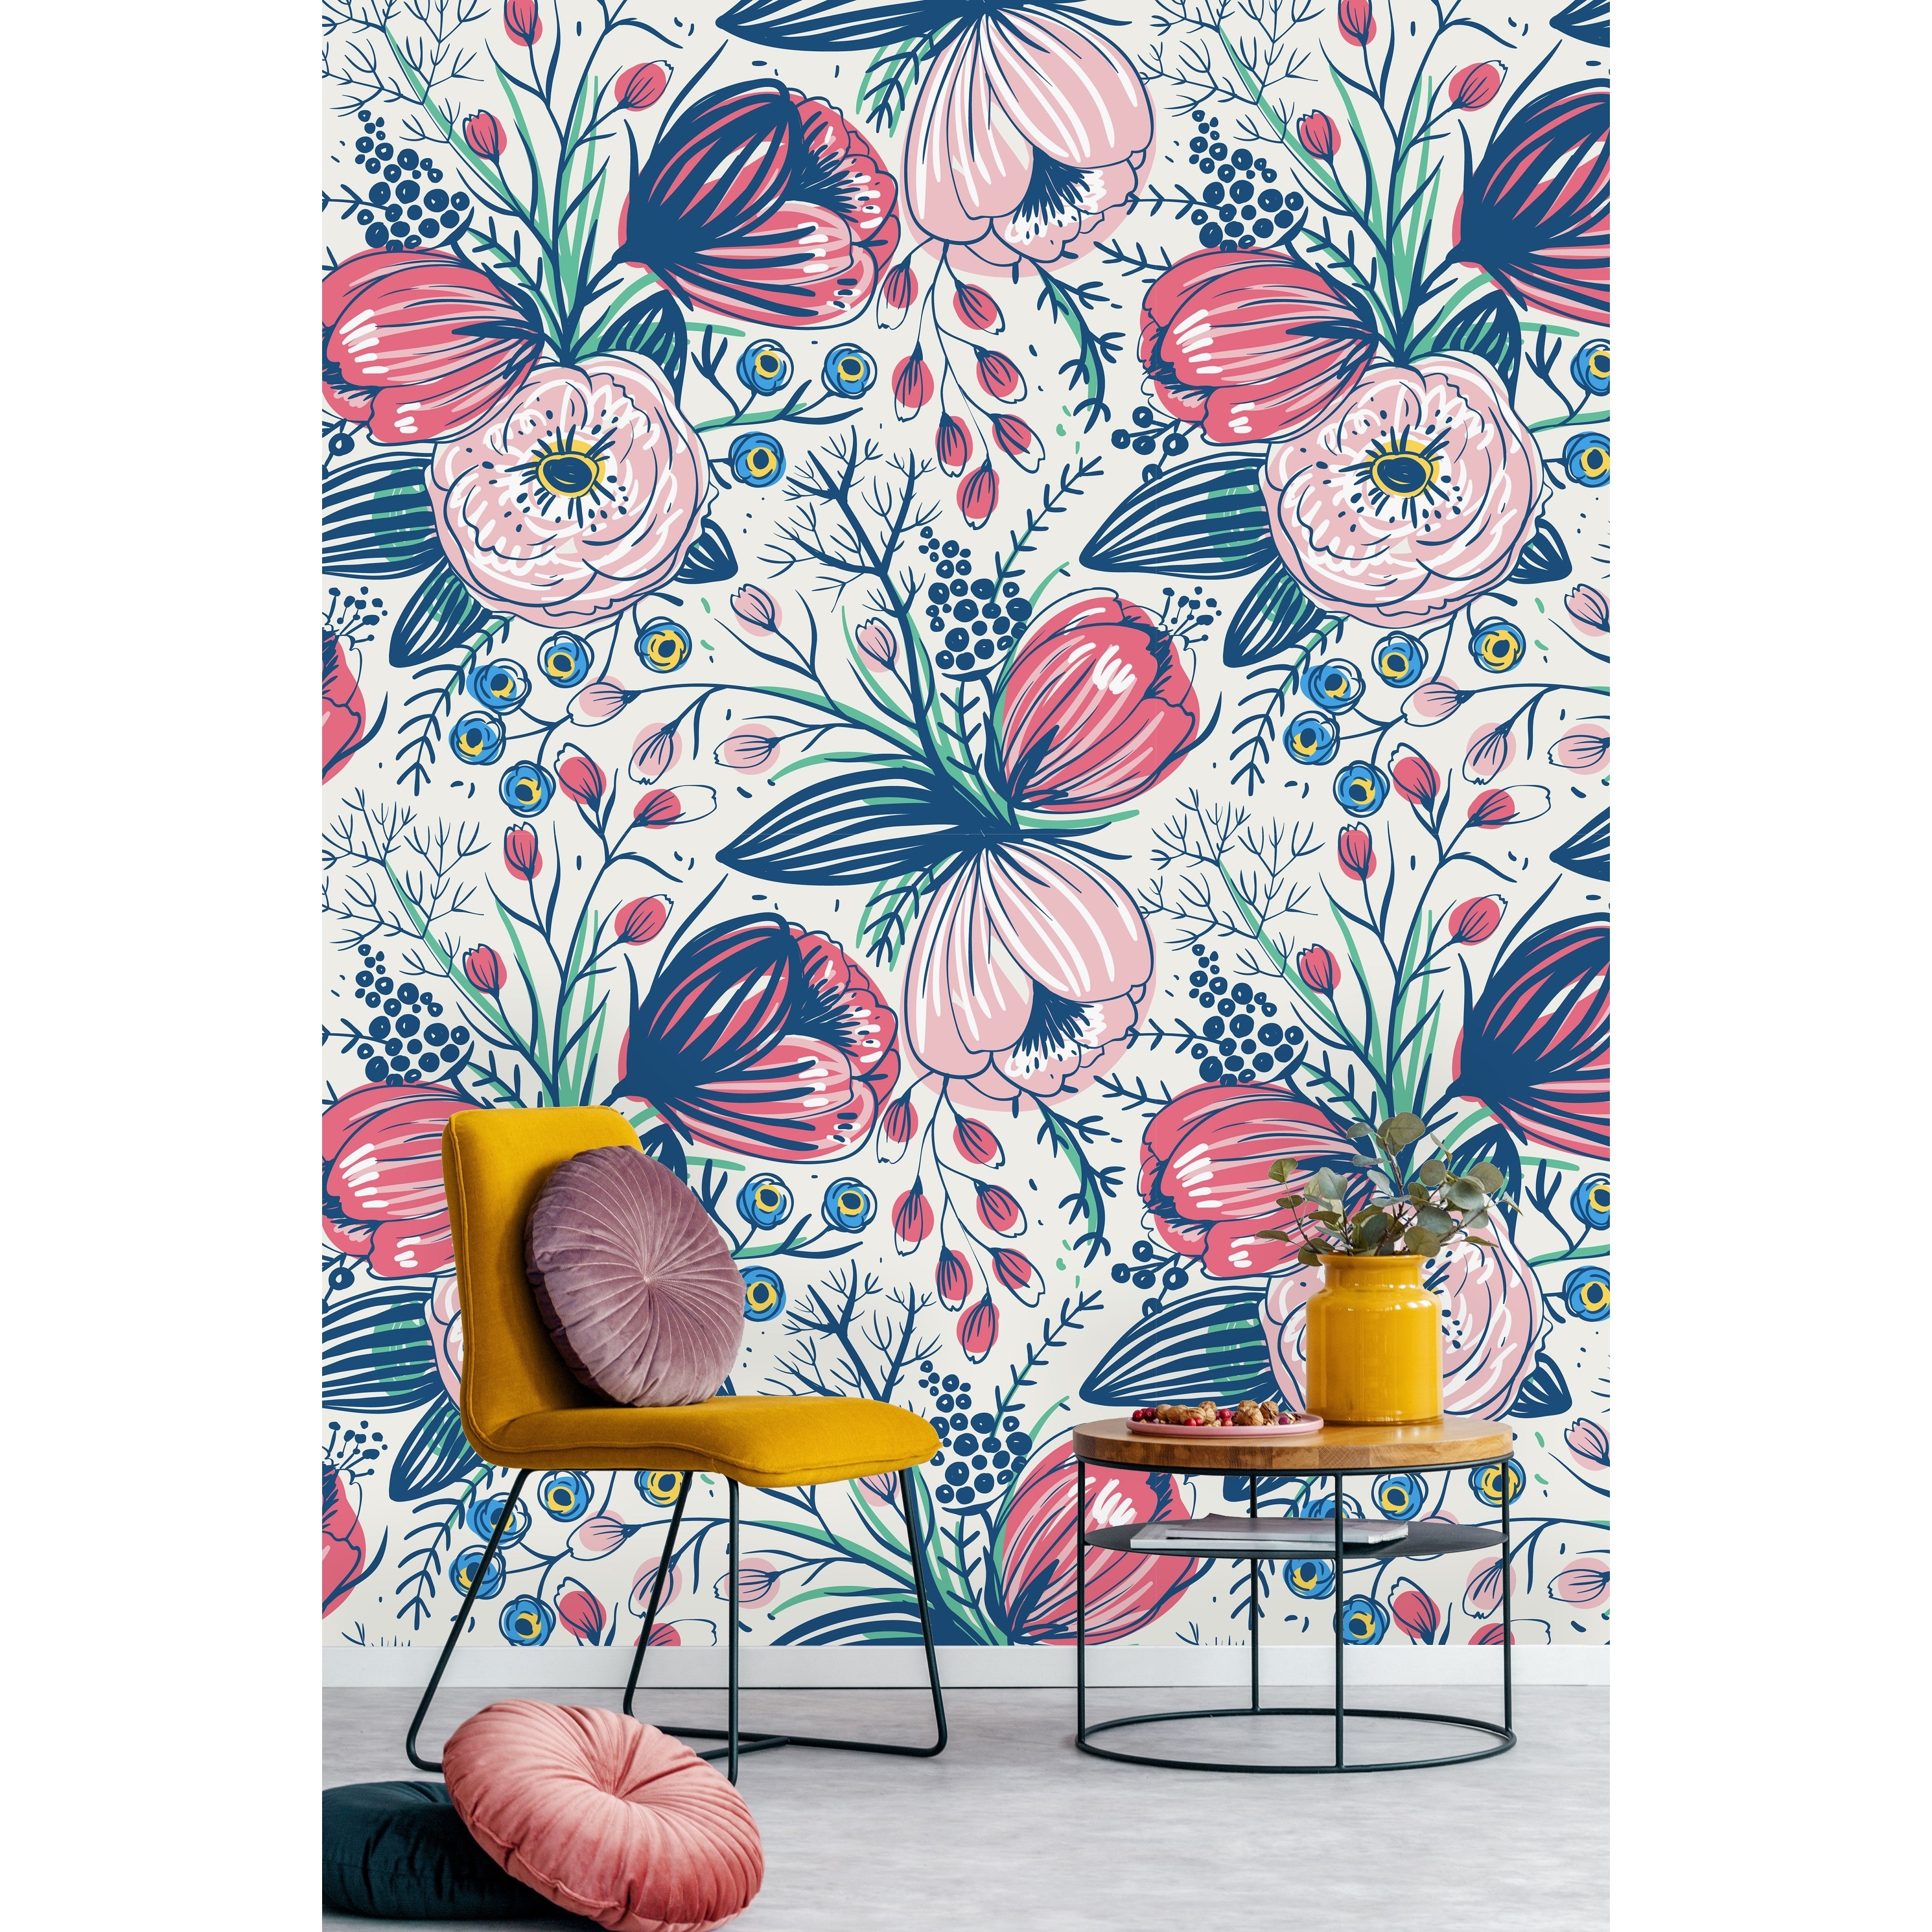 Vintage Poppy Flowers Wallpaper Mural - Overstock - 32617100